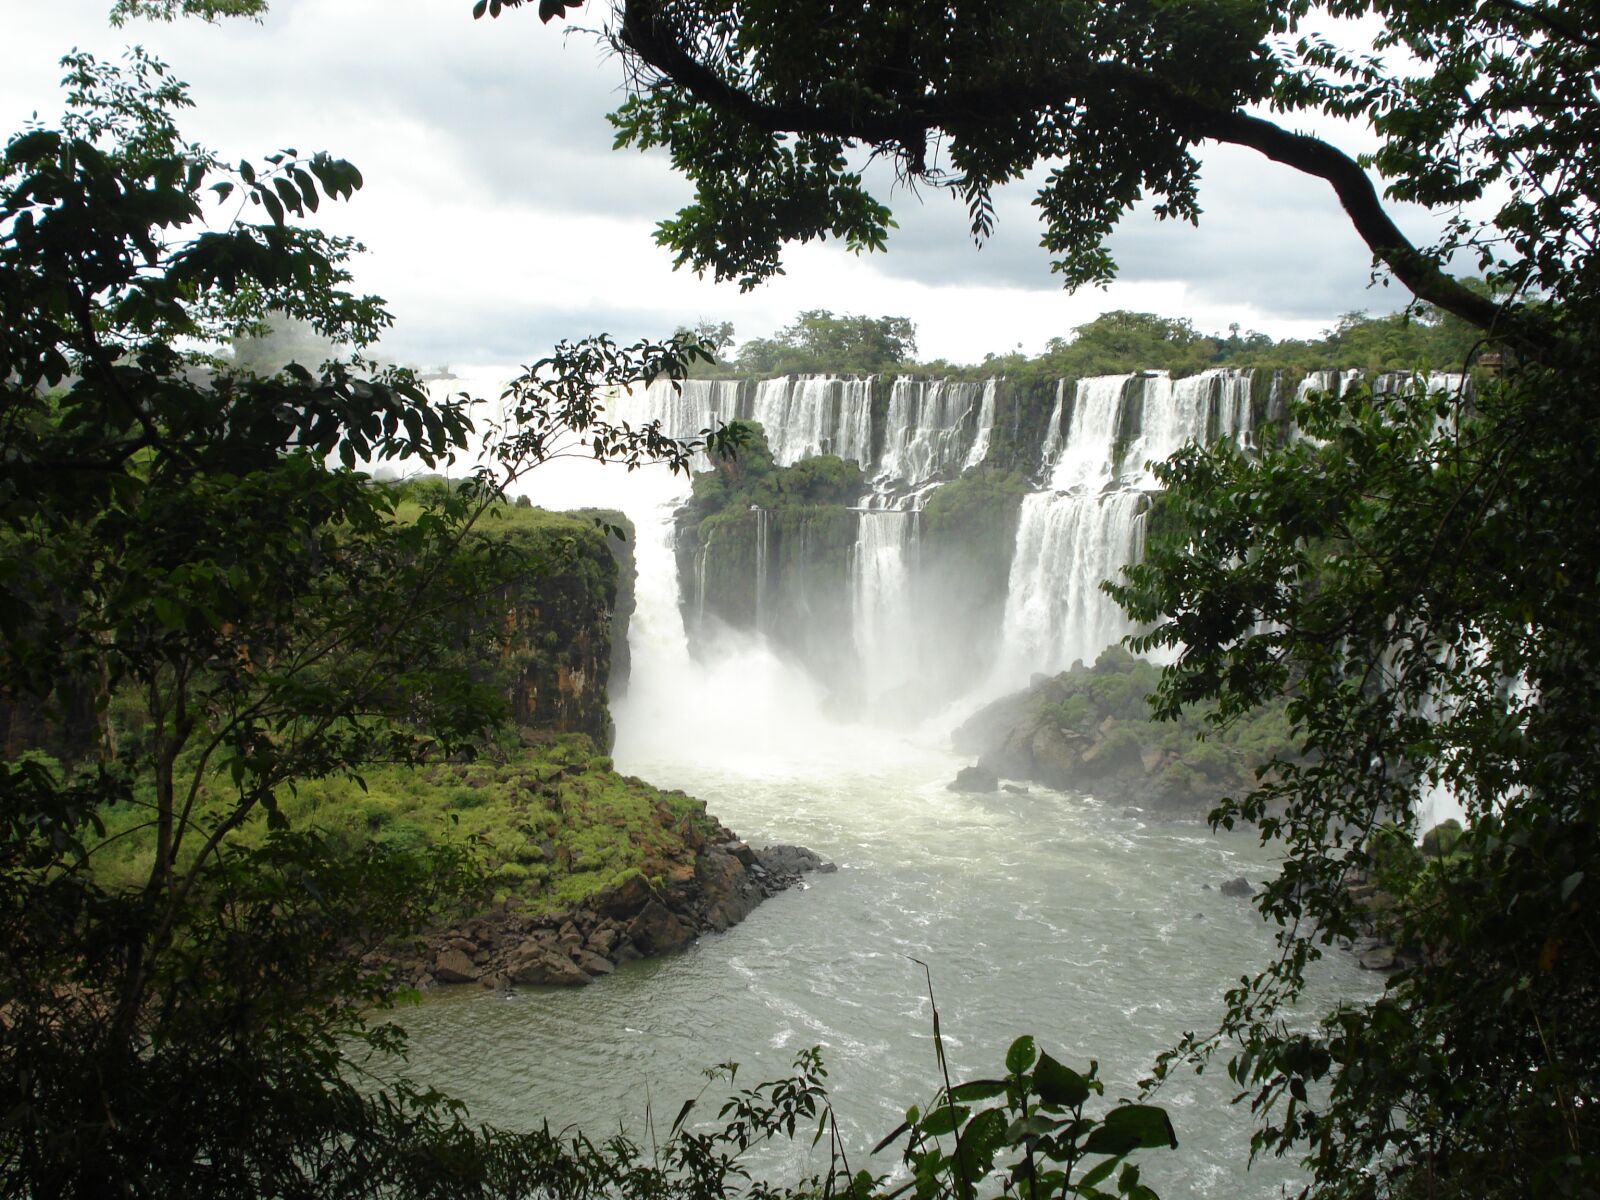 Sony DSC-W35 sample photo. Iguazu, waterfall, falls photography